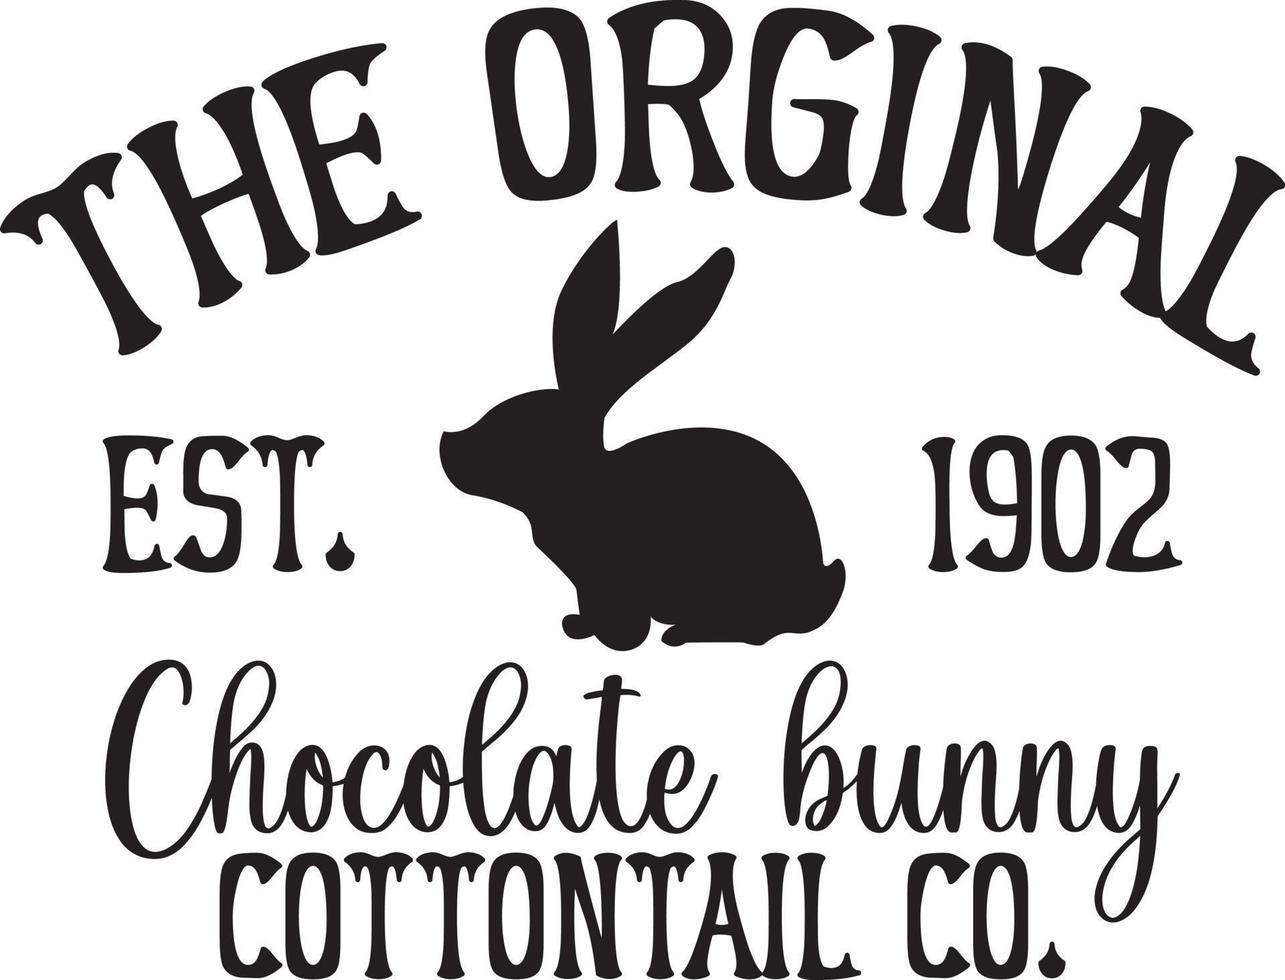 de original est. 1902 choklad kanin cottontail co. vektor